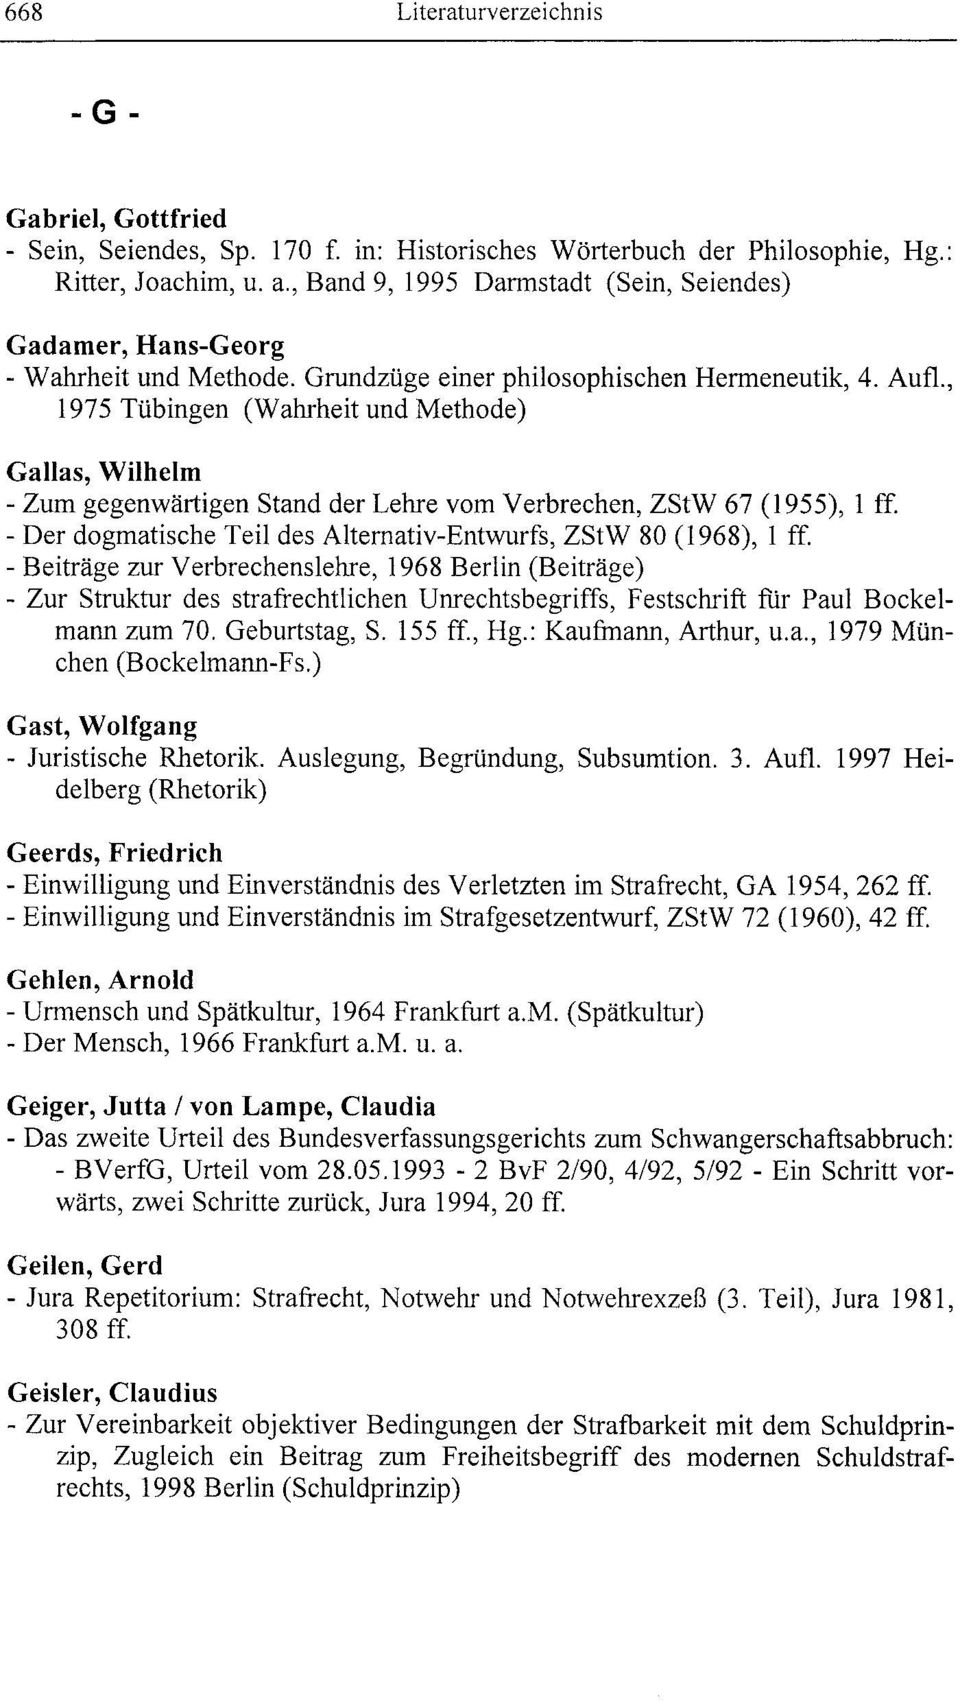 , 1975 Tübingen (Wahrheit und Methode) Galias, Wilhelm - Zum gegenwärtigen Stand der Lehre vom Verbrechen, ZStW 67 (1955), I ff. - Der dogmatische Teil des Alternativ-Entwurfs, ZStW 80 (1968), I ff.